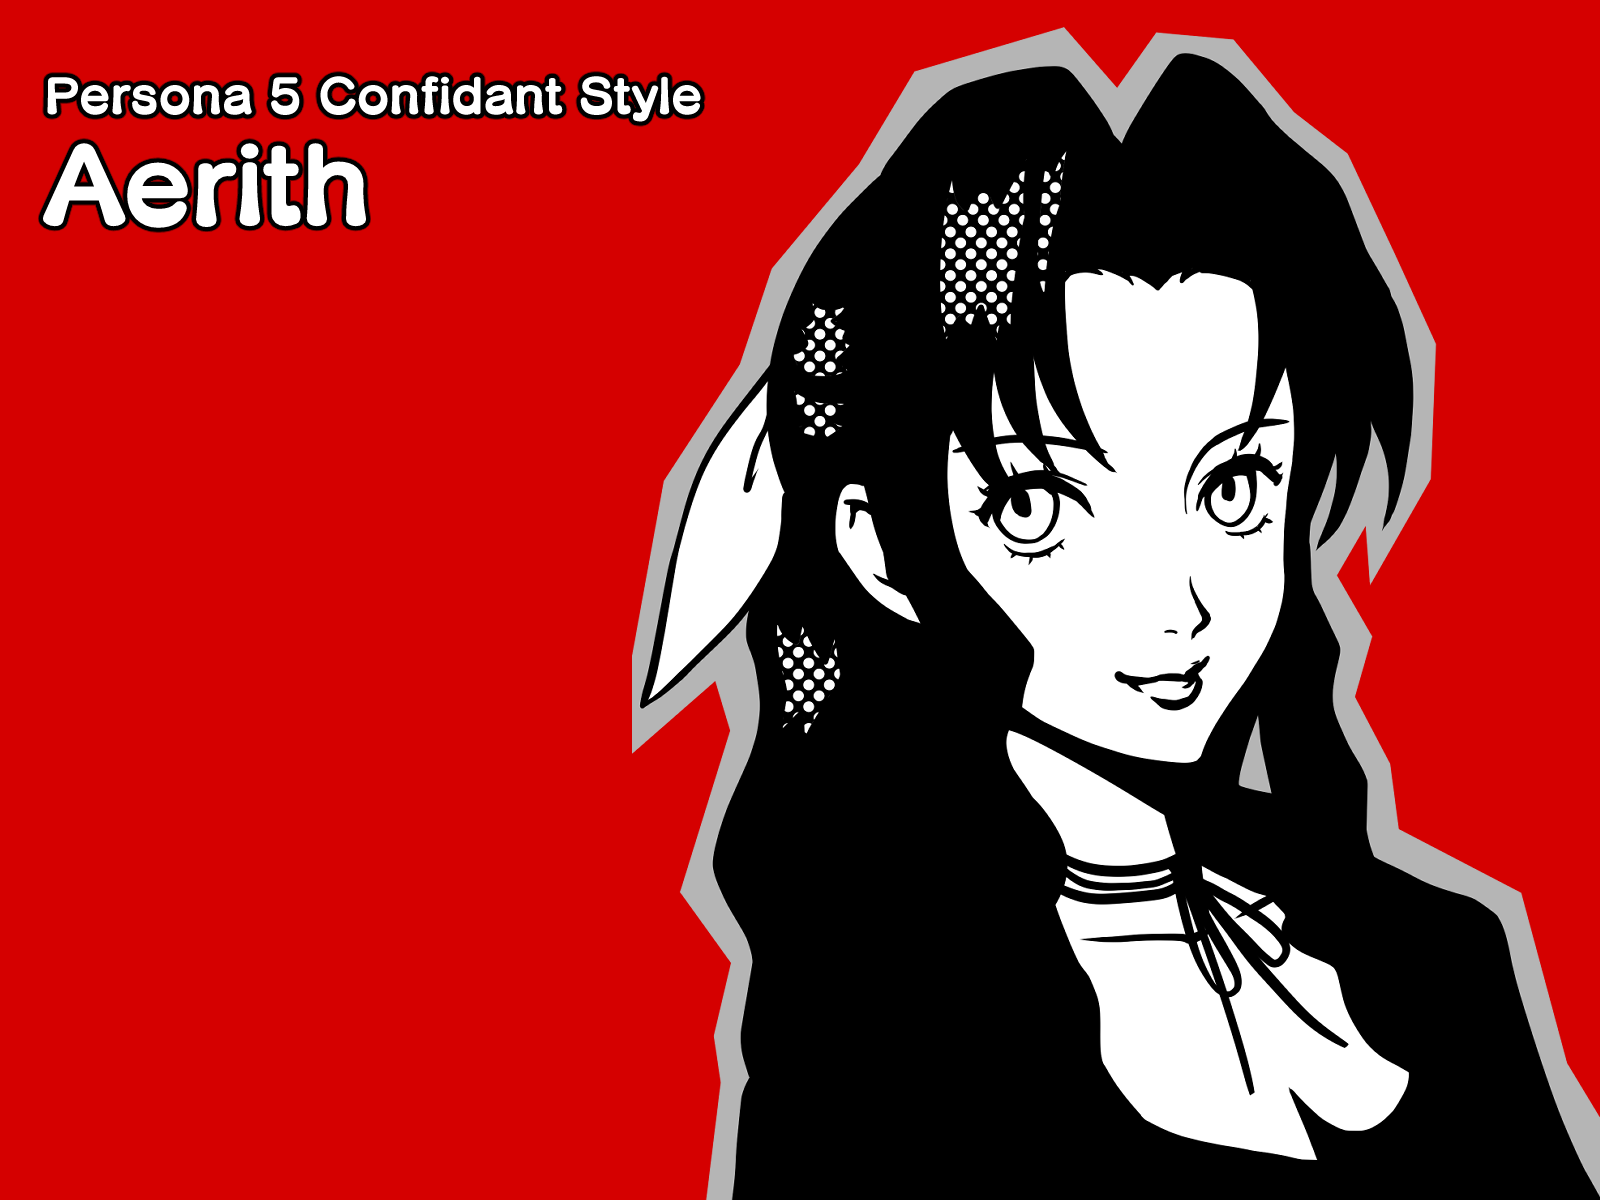 Persona 5 Confidant Style - Aerith By Maruki On Dribbble